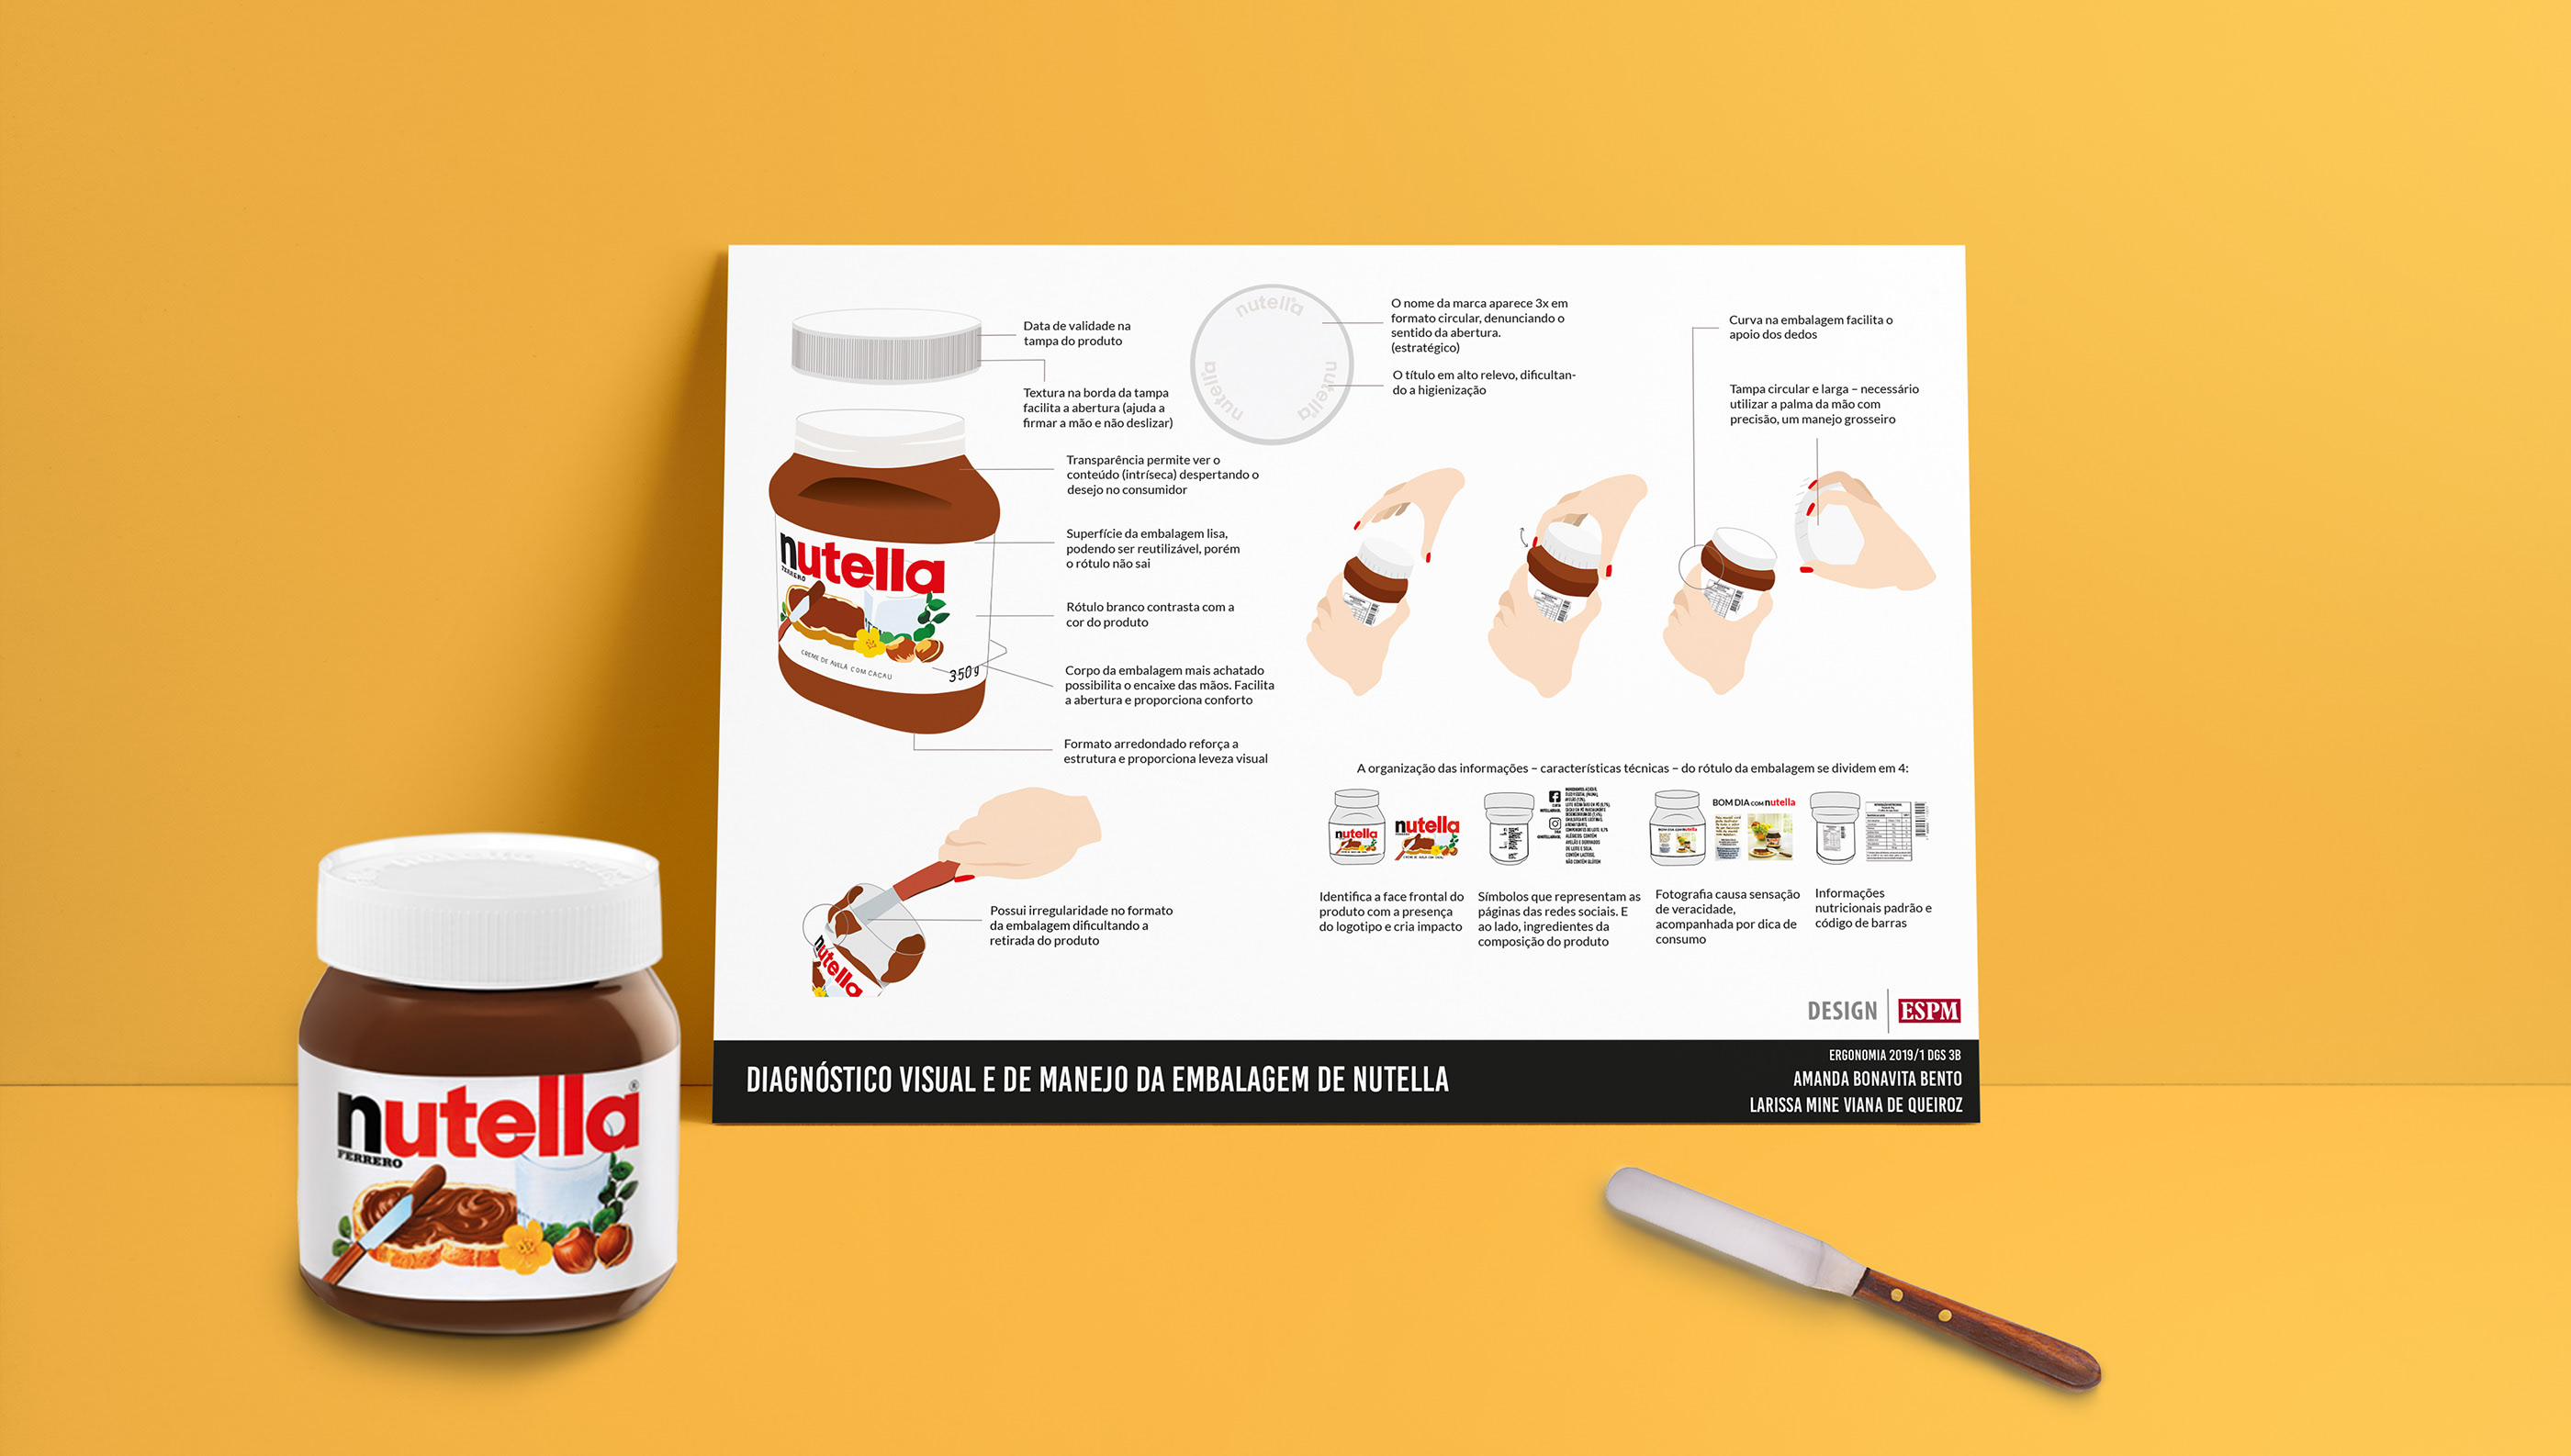 Diagnóstico visual e de manejo | Nutella on Behance